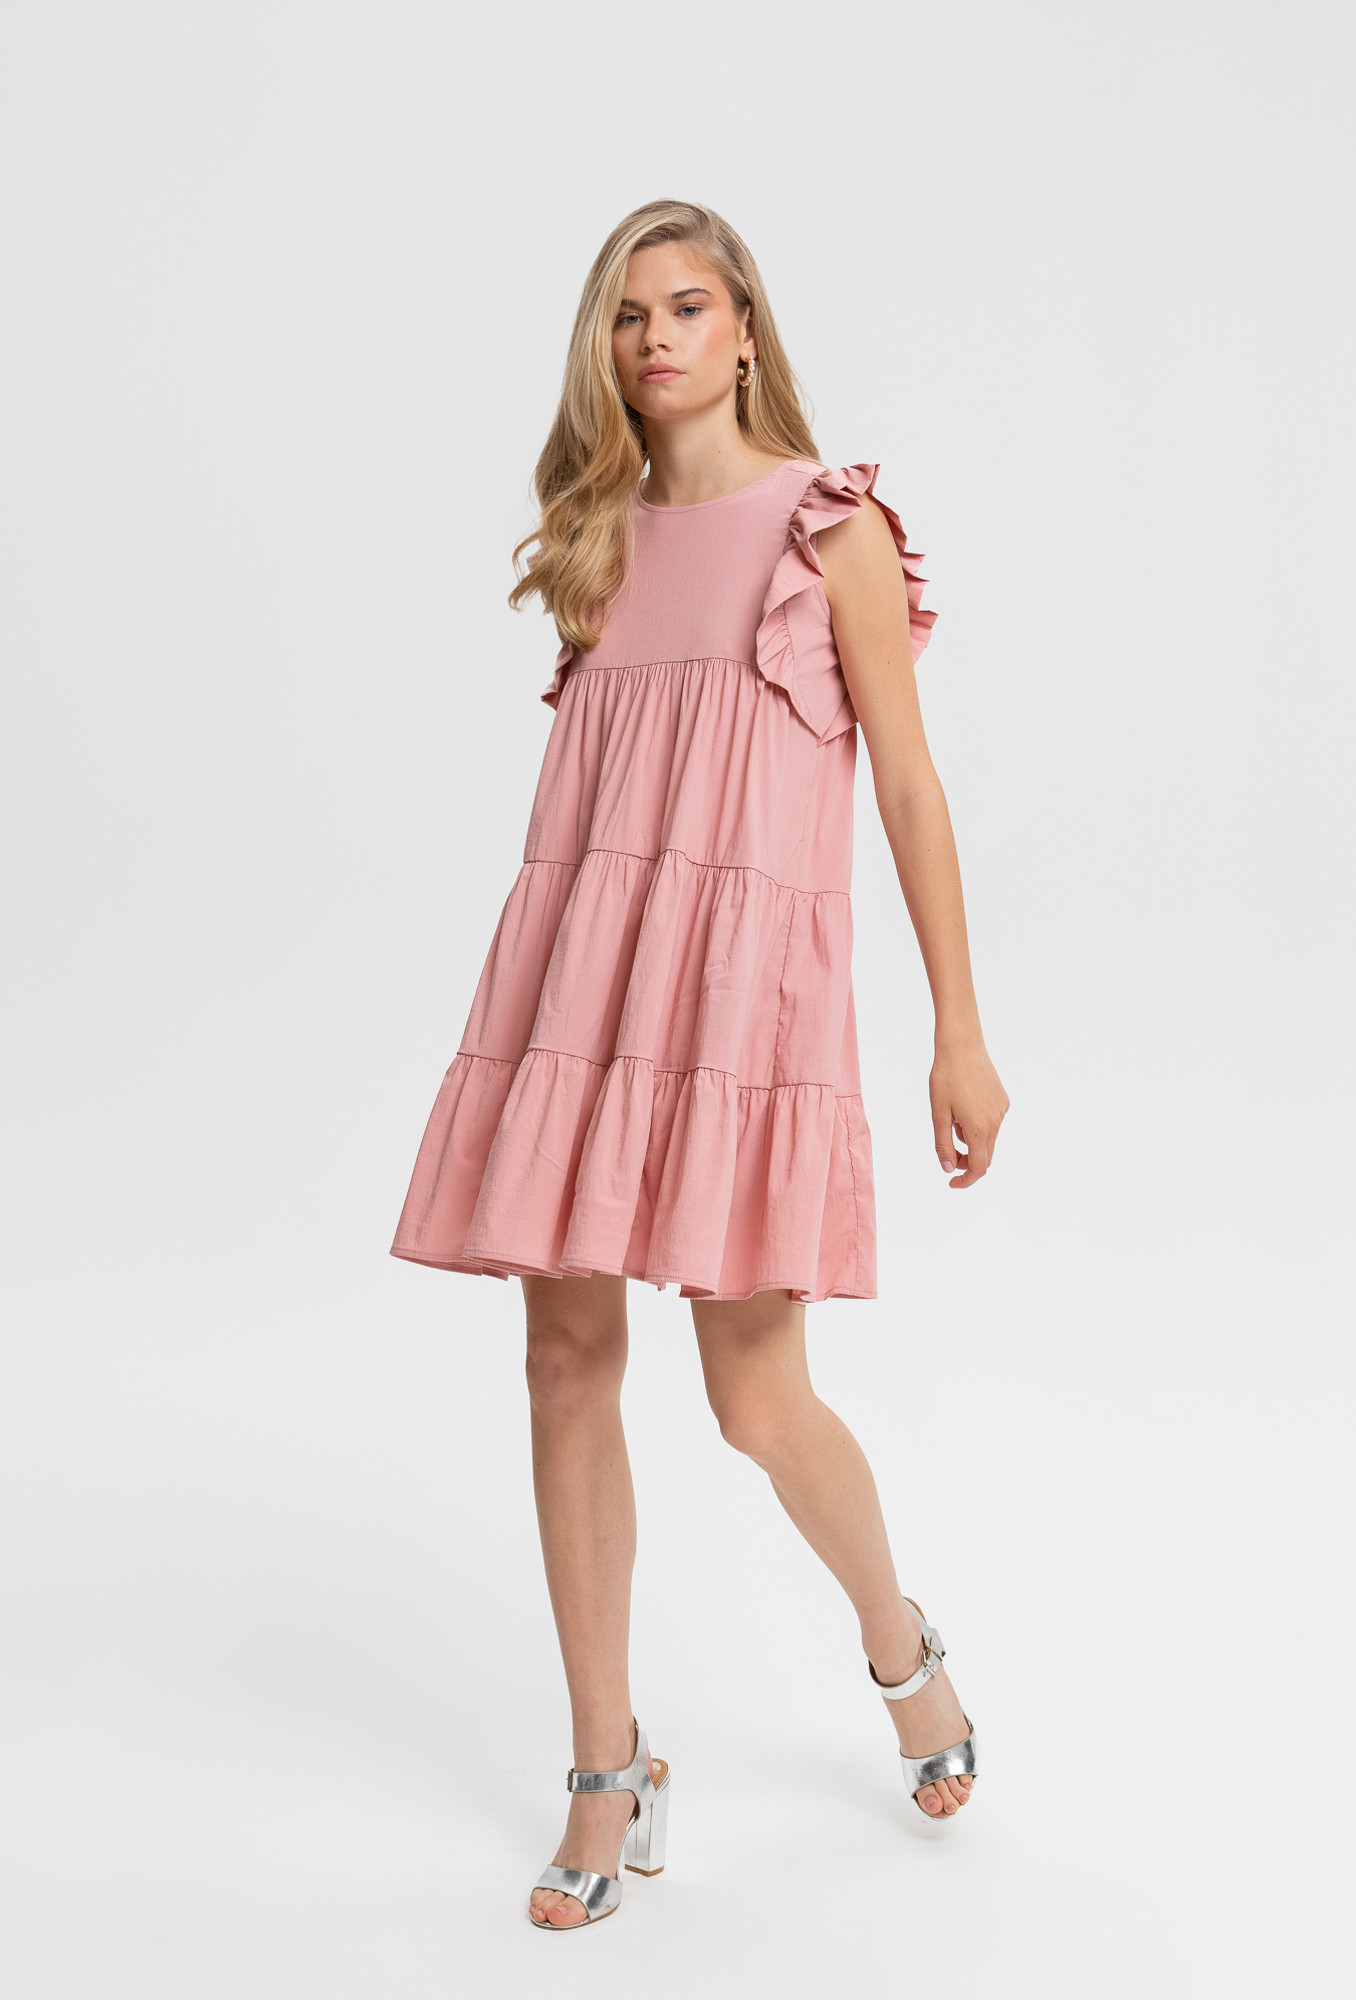 Monnari Šaty Mini šaty s volánem růžové 42